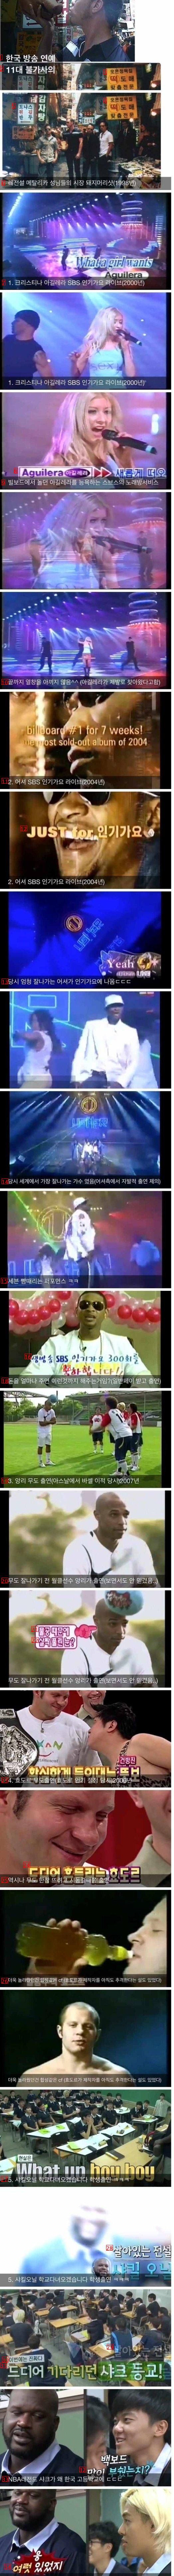 韓国の芸能放送11不思議なブルブルブル